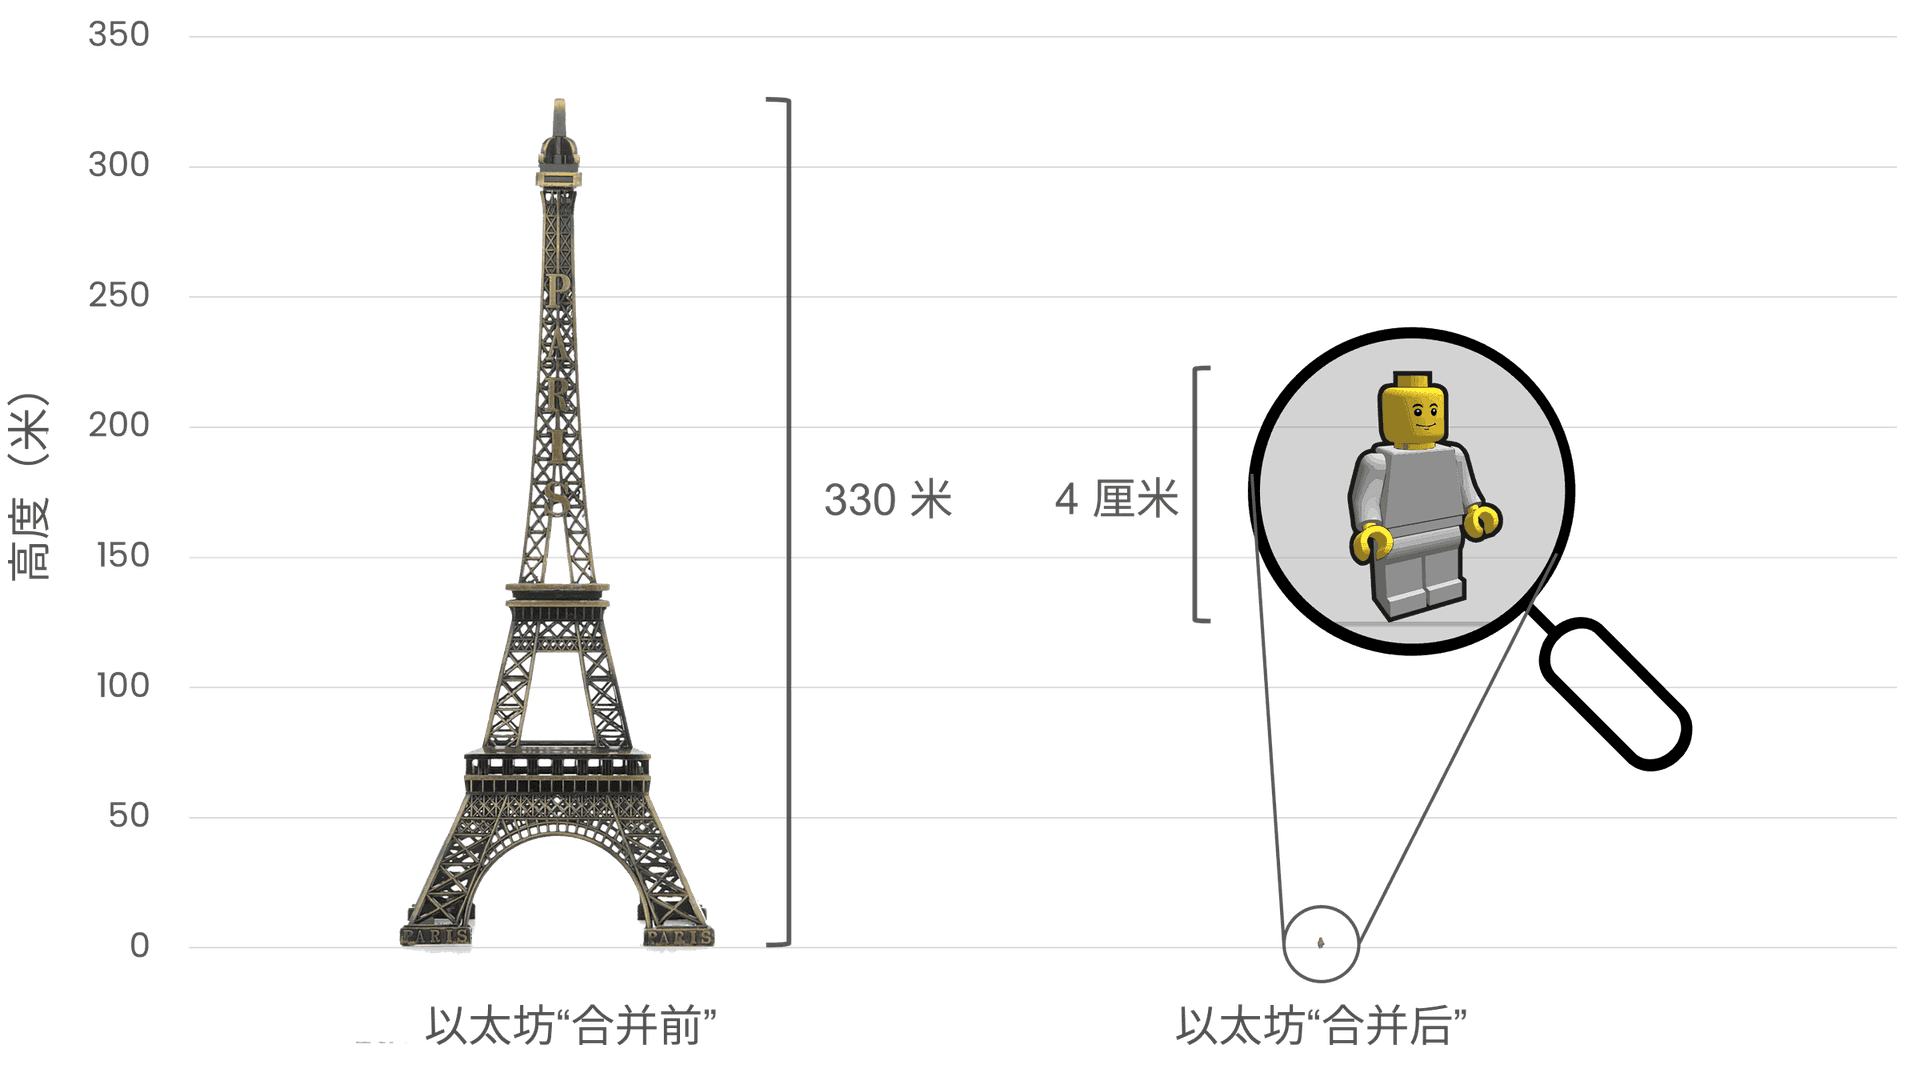 合并前后以太坊能源消耗比较，左侧 330 米高的埃菲尔铁塔表示以太坊合并前的高能耗，右侧 4 厘米高的乐高小人代表以太坊合并后大幅降低的能耗